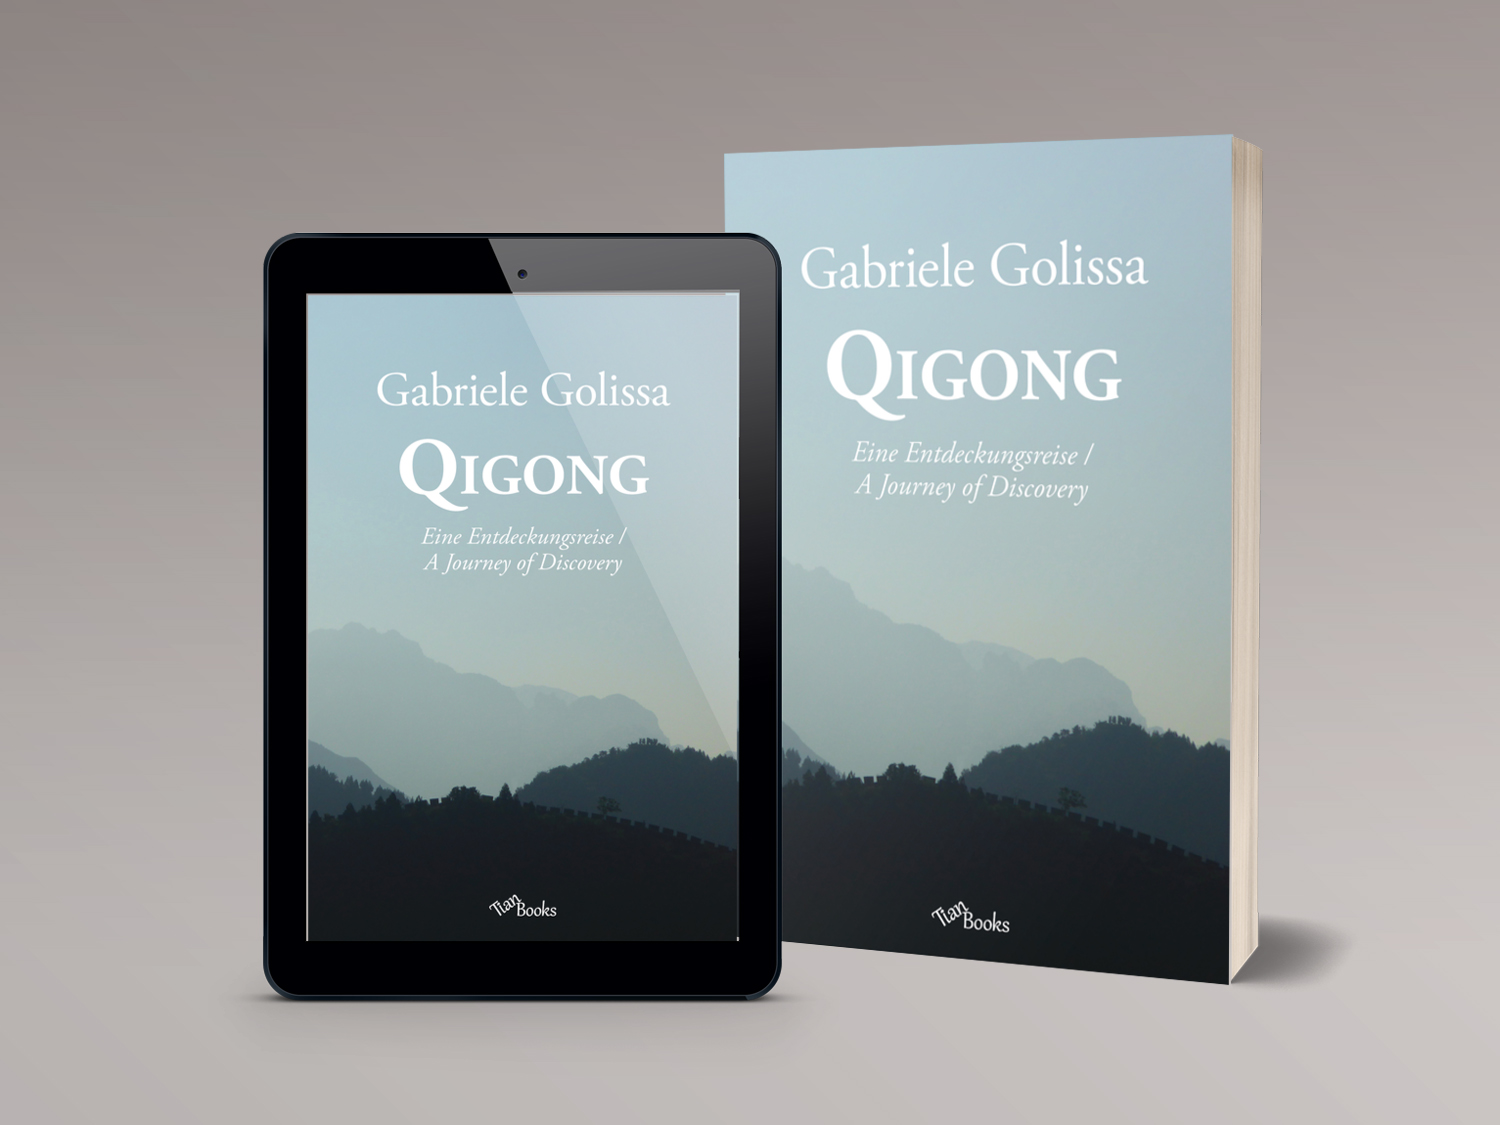 "Qigong - Eine Entdeckungsreise" als Paperback und E-Book.